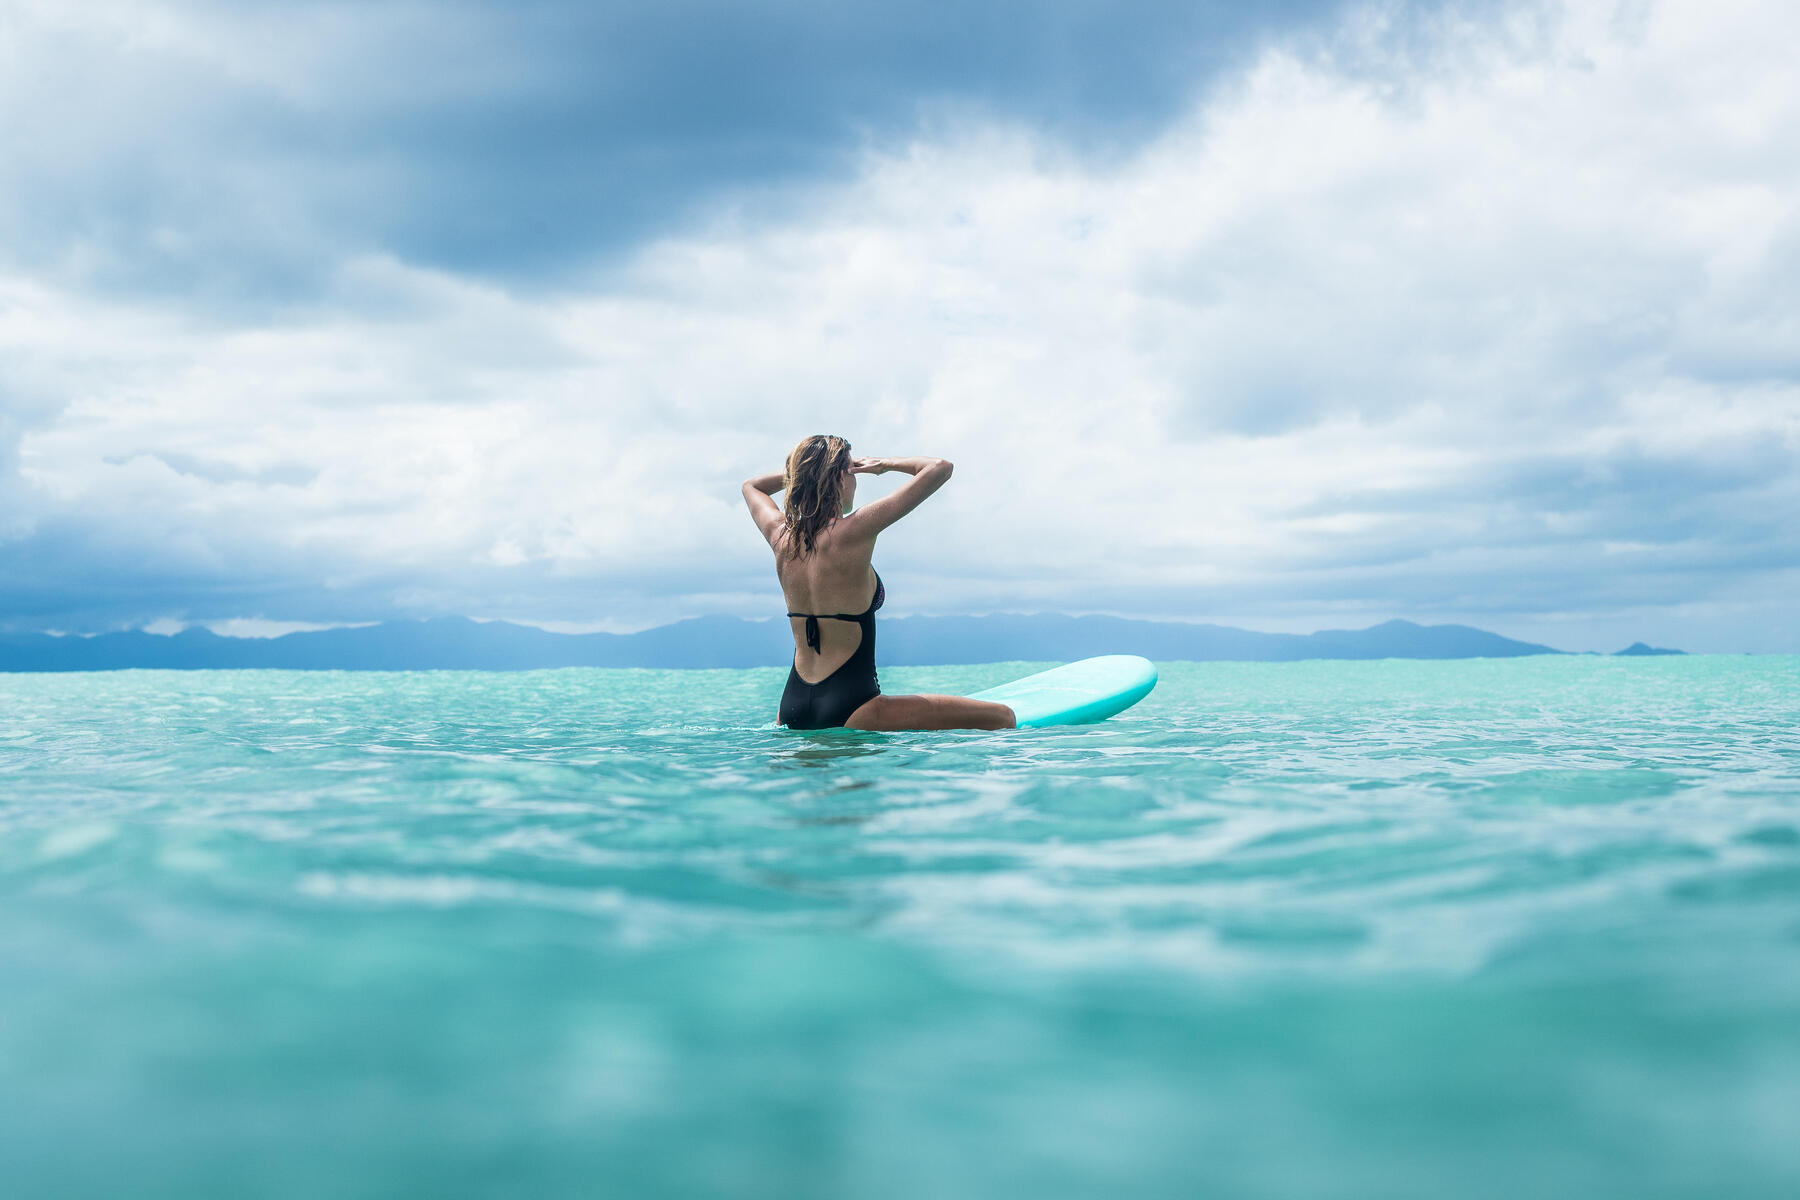 5 goede redenen om deze zomer te starten met surfen